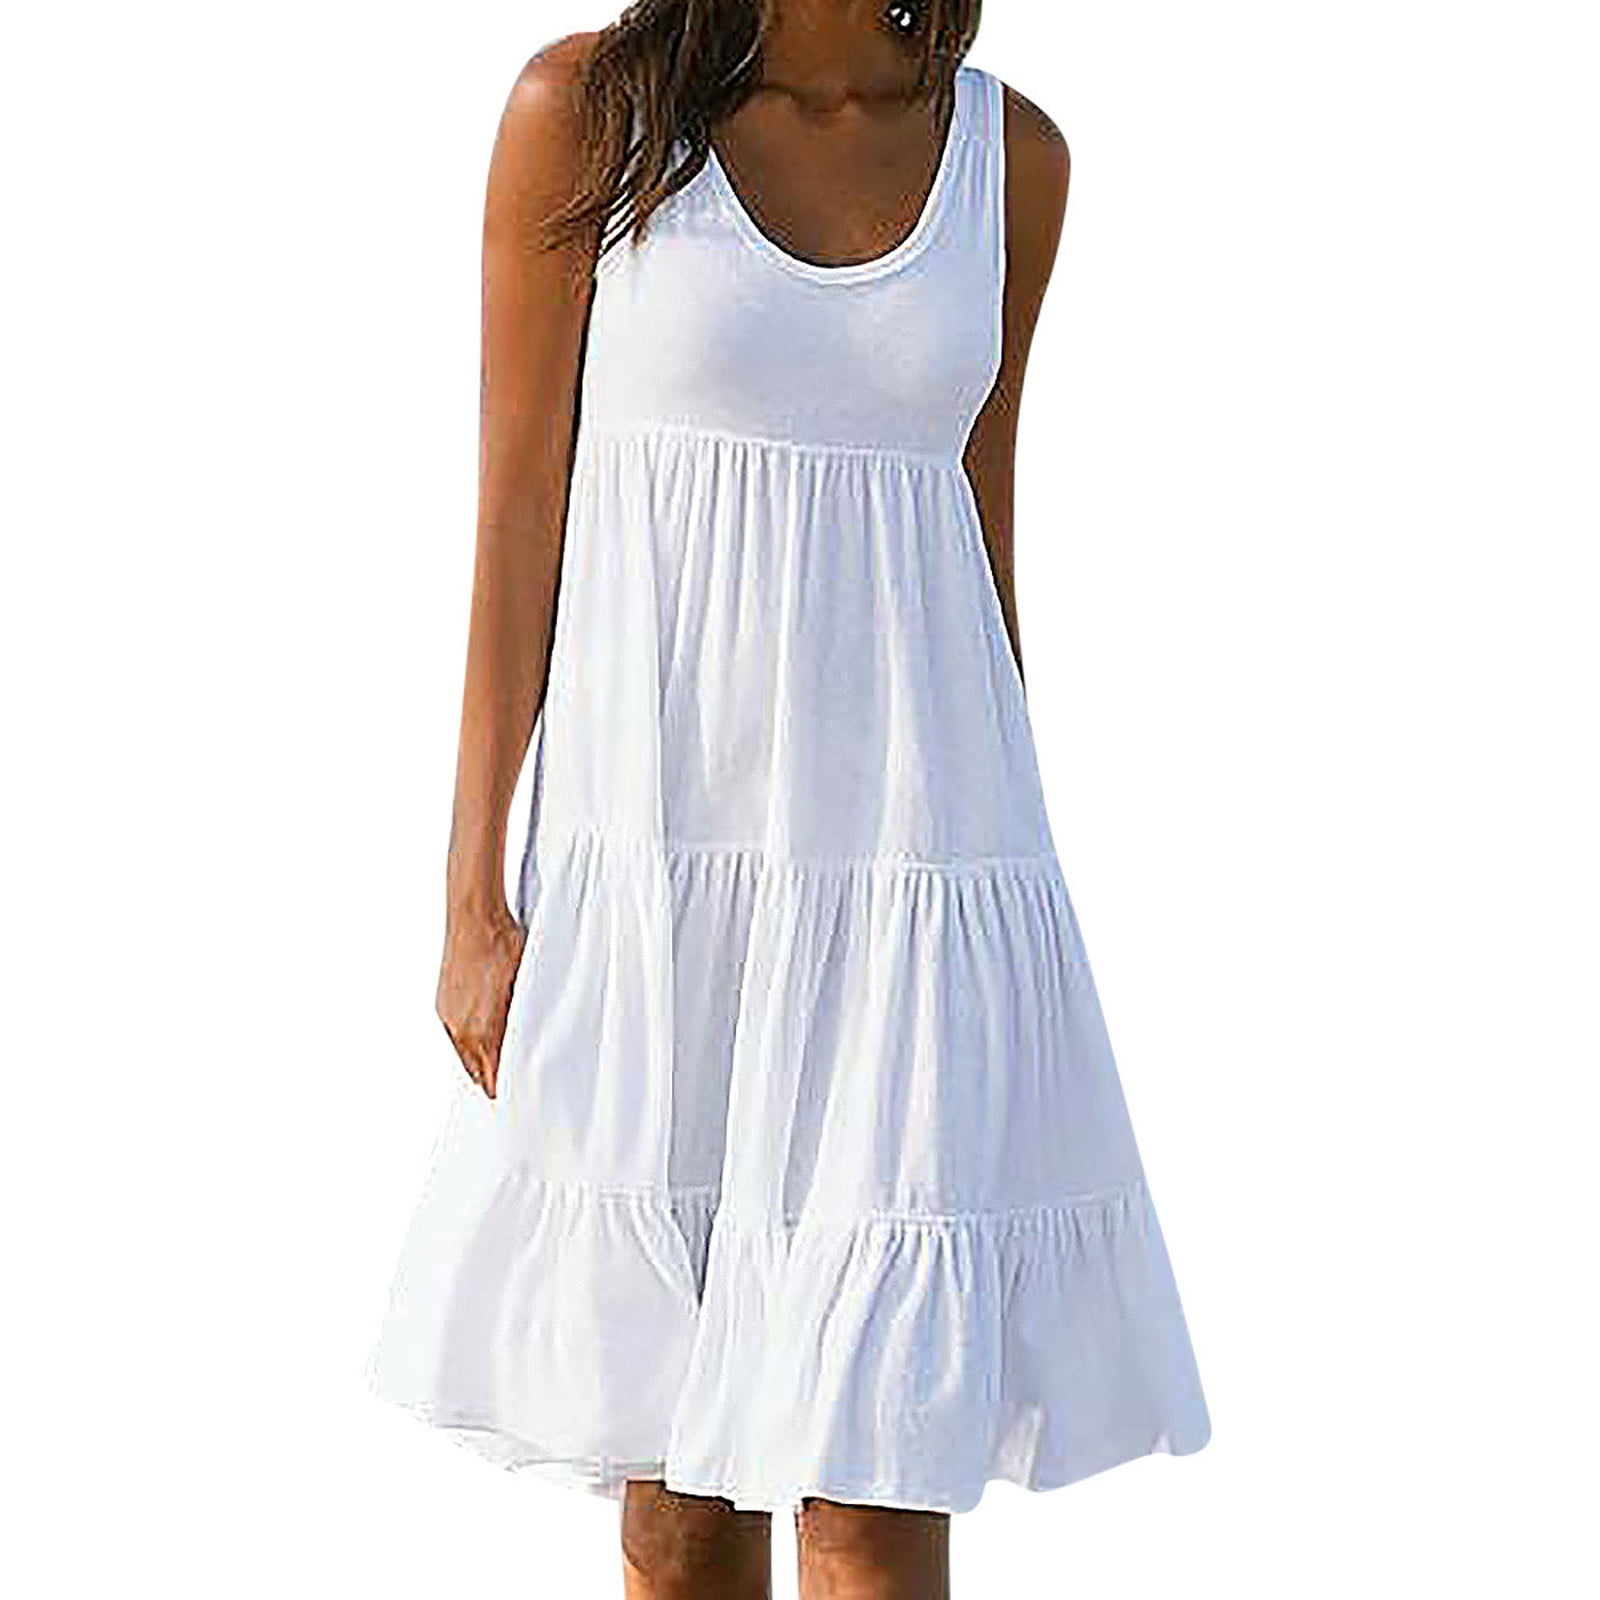 Casual Summer Dresses For Women Sleeveless Dress Party Dresses Elegant ...